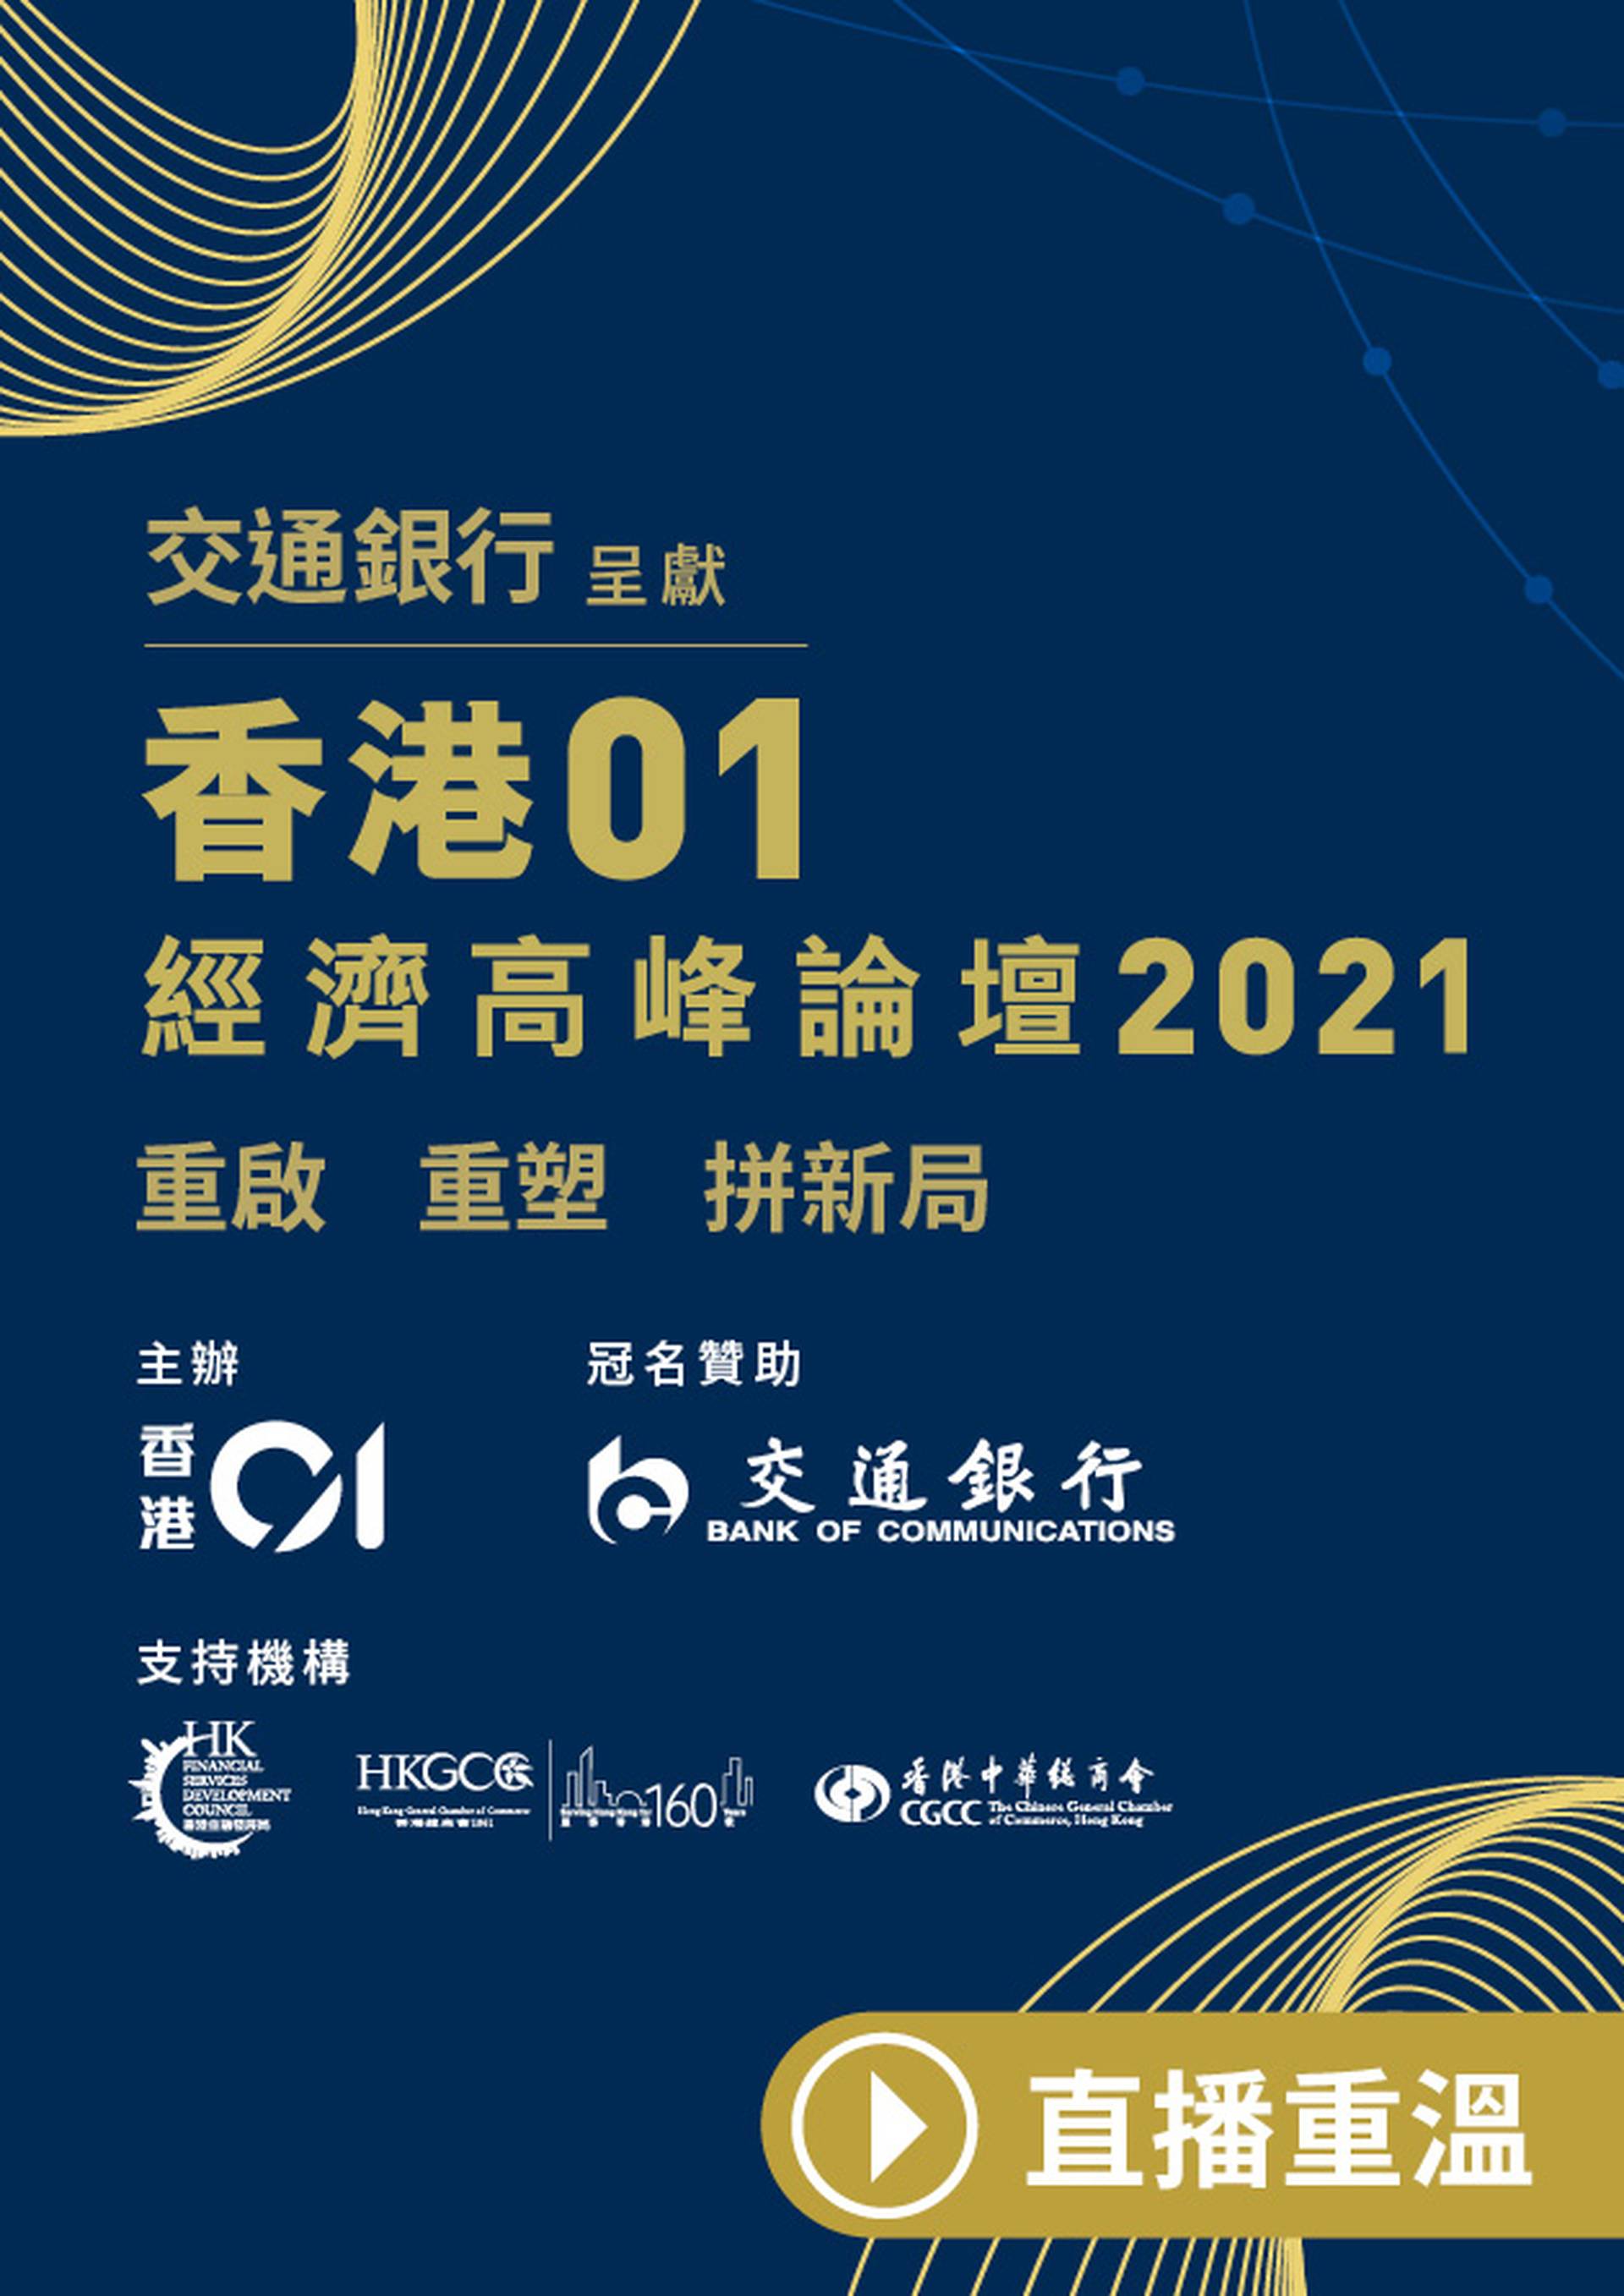 【重溫】交通銀行呈獻《香港01》經濟高峰論壇2021